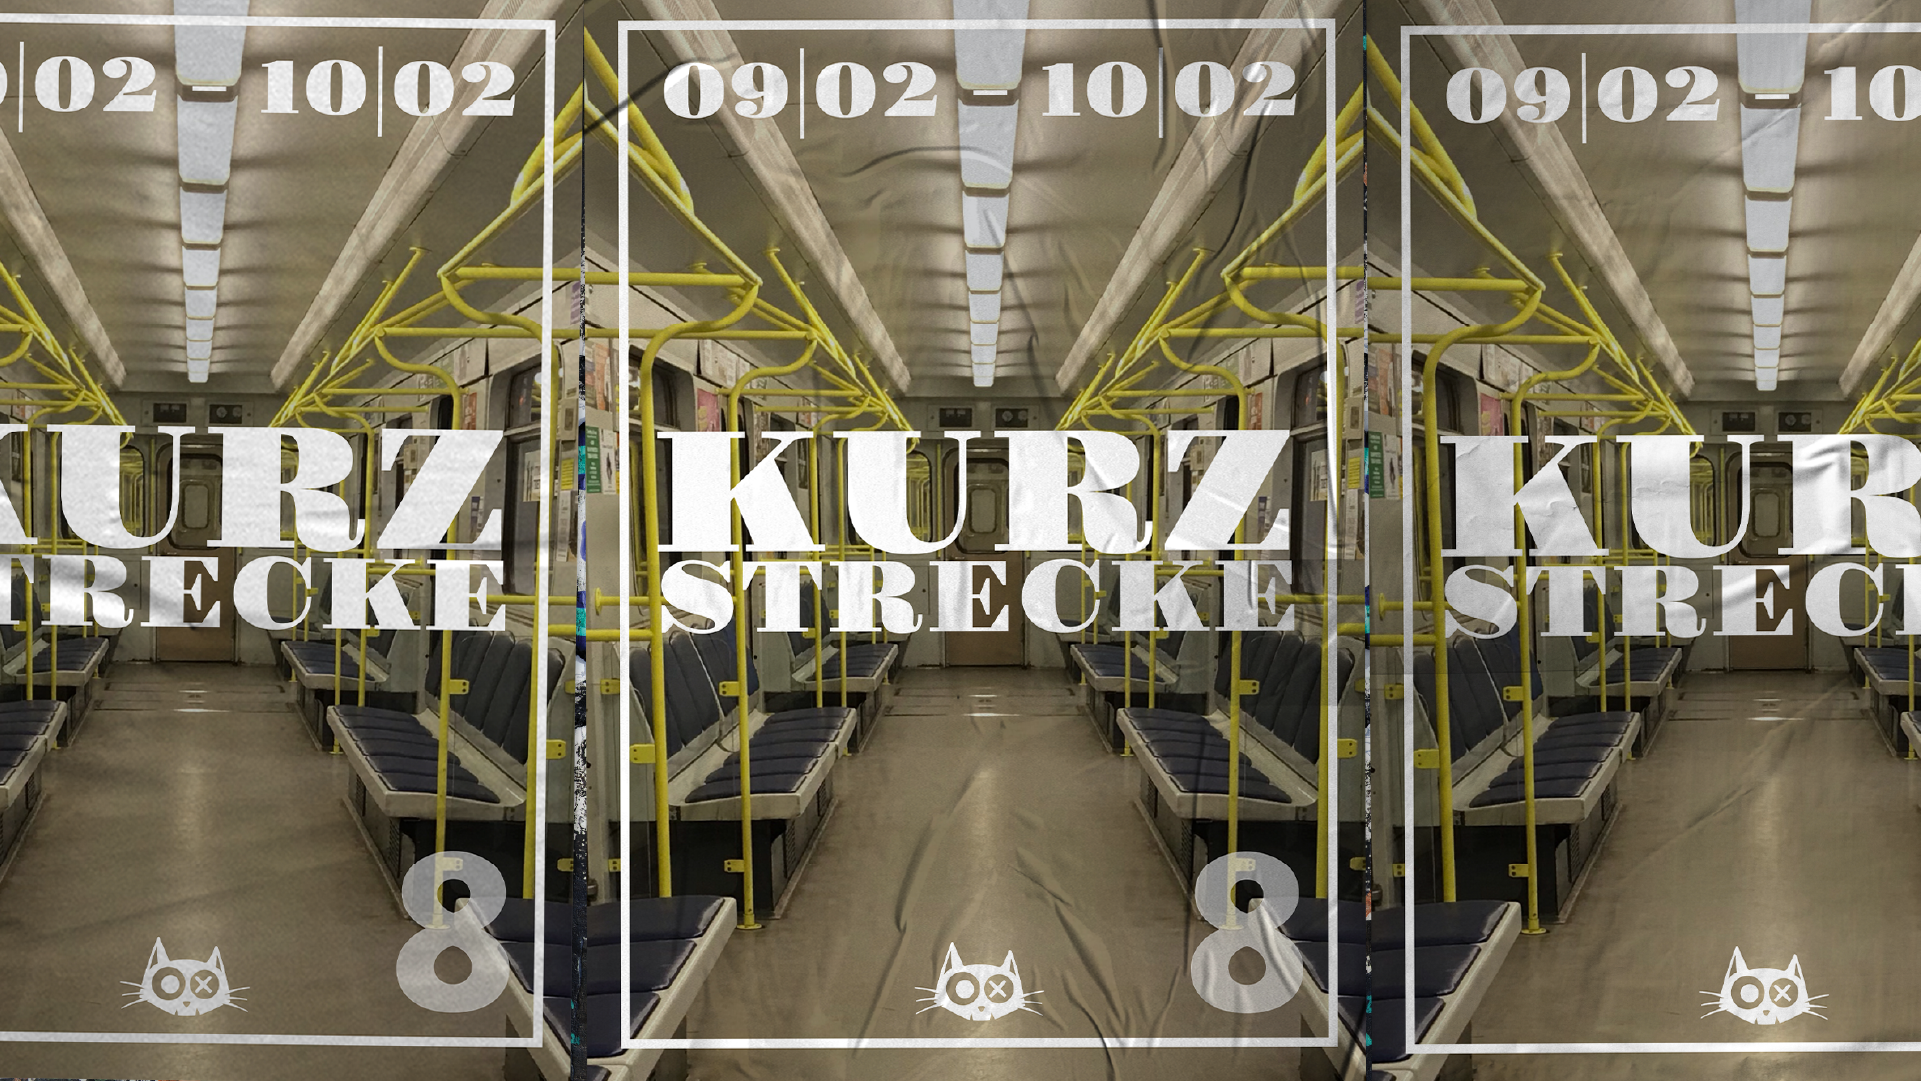 KURZSTRECKE 8 - フライヤー表